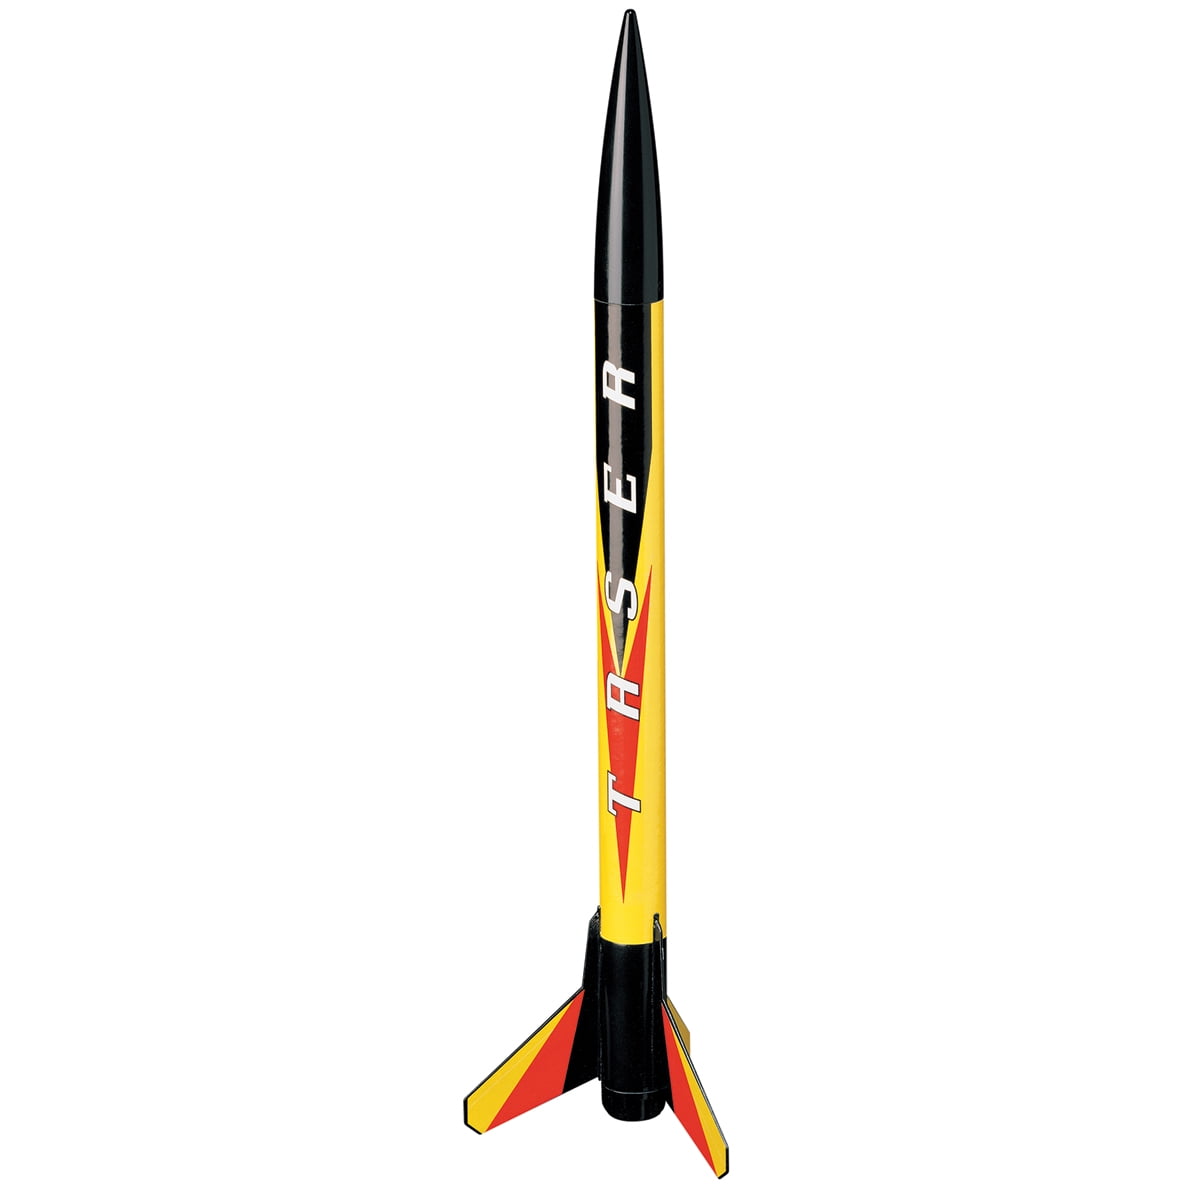 1491 Estes Taser Model Rocket Kit E2x Launch Starter Set for sale online 